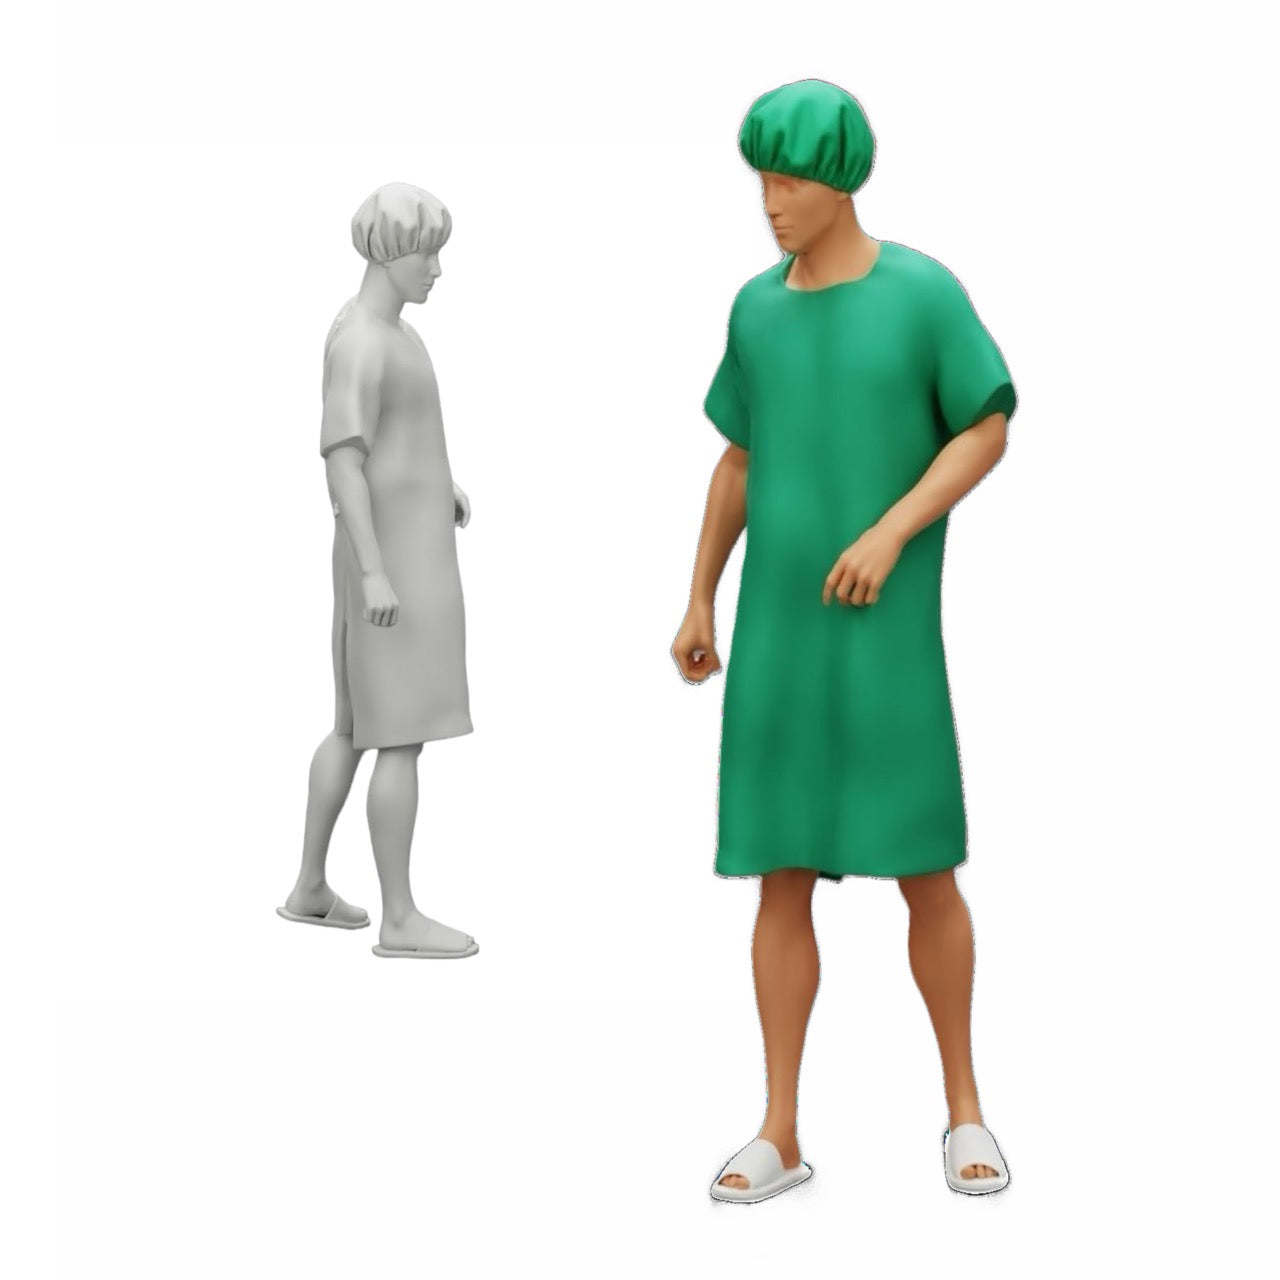 Diorama Modellbau Produktfoto 0: Patient im Krankenhaus bewegt sich fort (Ref Nr. A27)